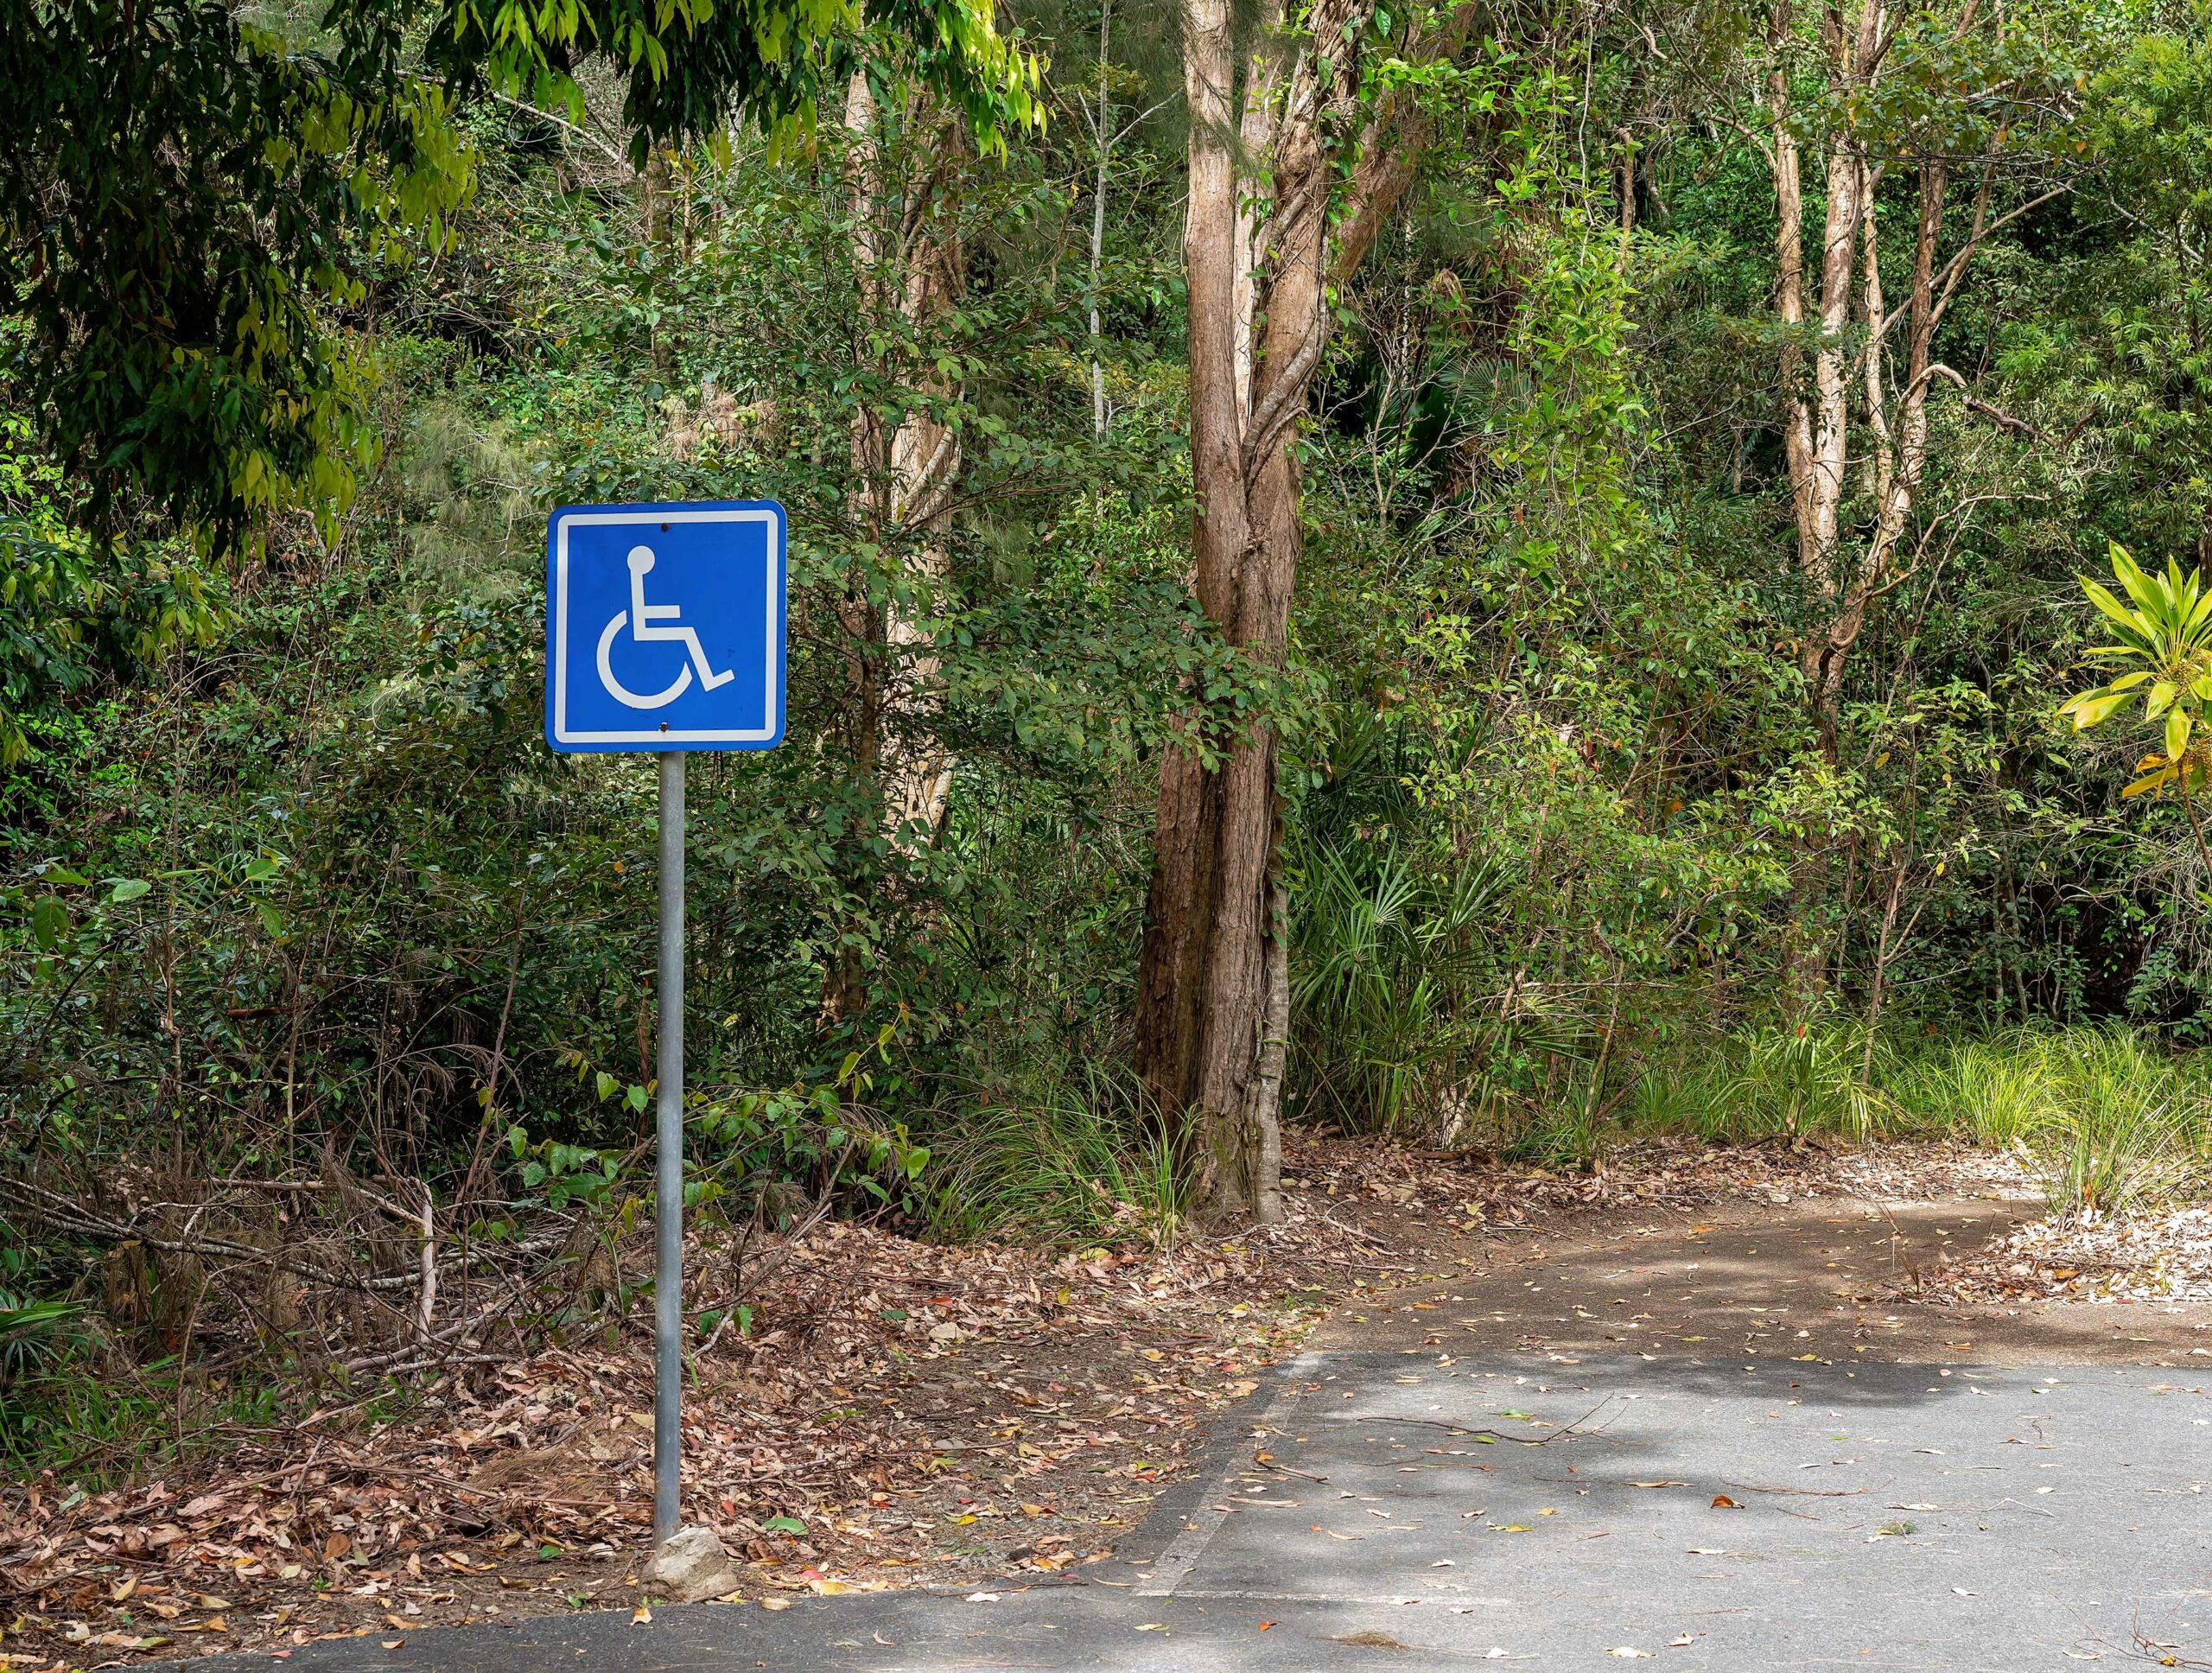 sentiers label tourisme et handicap accessible pmr fontainebleau